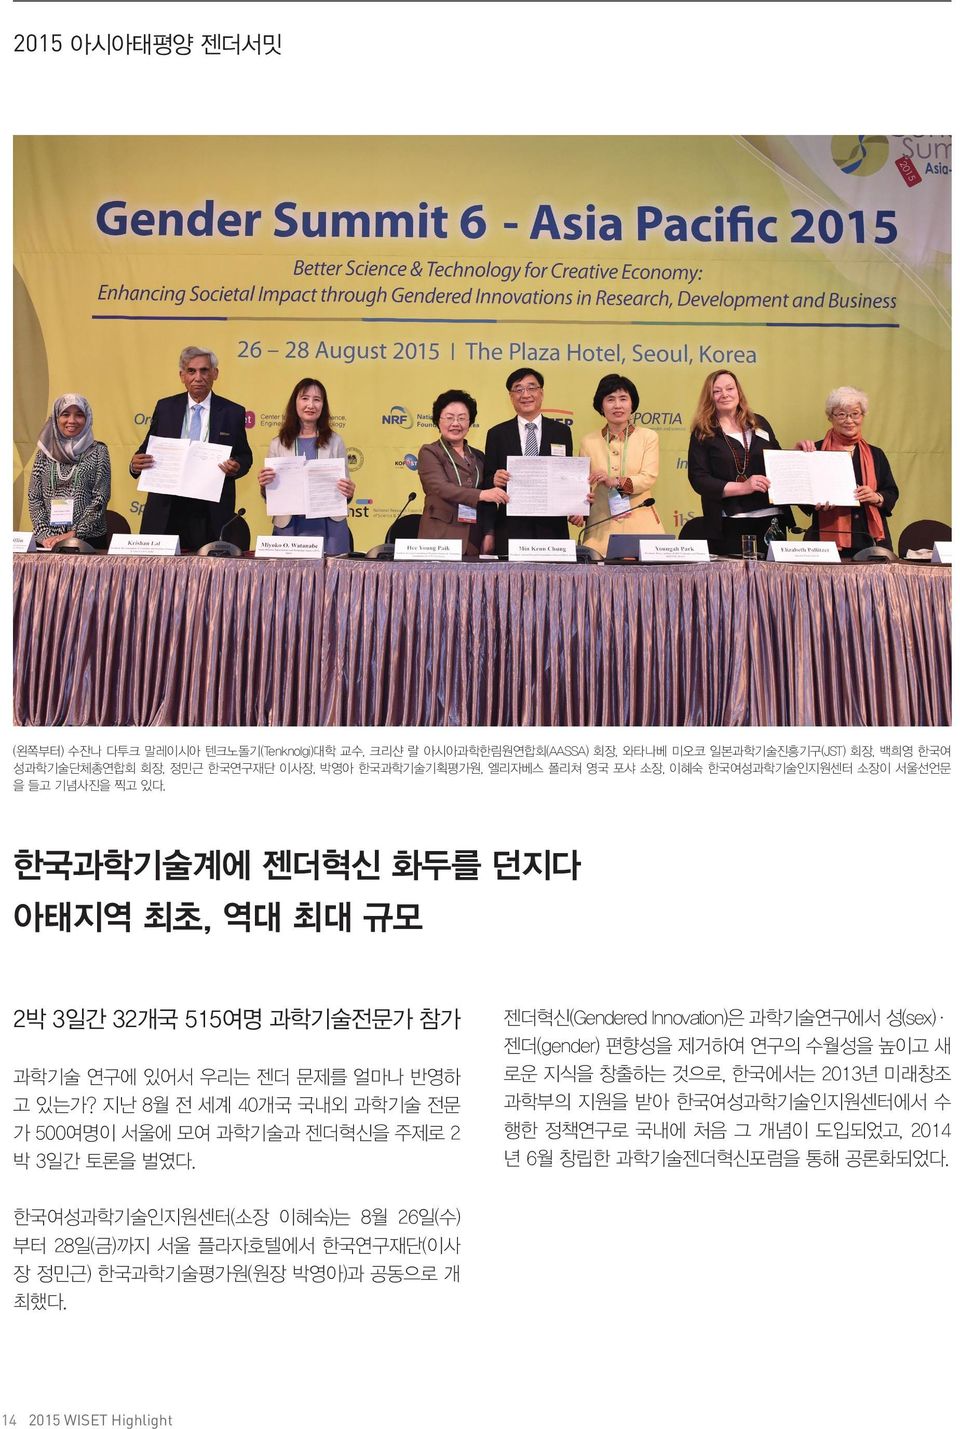 지난 8월 전 세계 40개국 국내외 과학기술 전문 가 500여명이 서울에 모여 과학기술과 젠더혁신을 주제로 2 박 3일간 토론을 벌였다. 한국여성과학기술인지원센터(소장 이혜숙)는 8월 26일(수) 부터 28일(금)까지 서울 플라자호텔에서 한국연구재단(이사 장 정민근) 한국과학기술평가원(원장 박영아)과 공동으로 개 최했다.